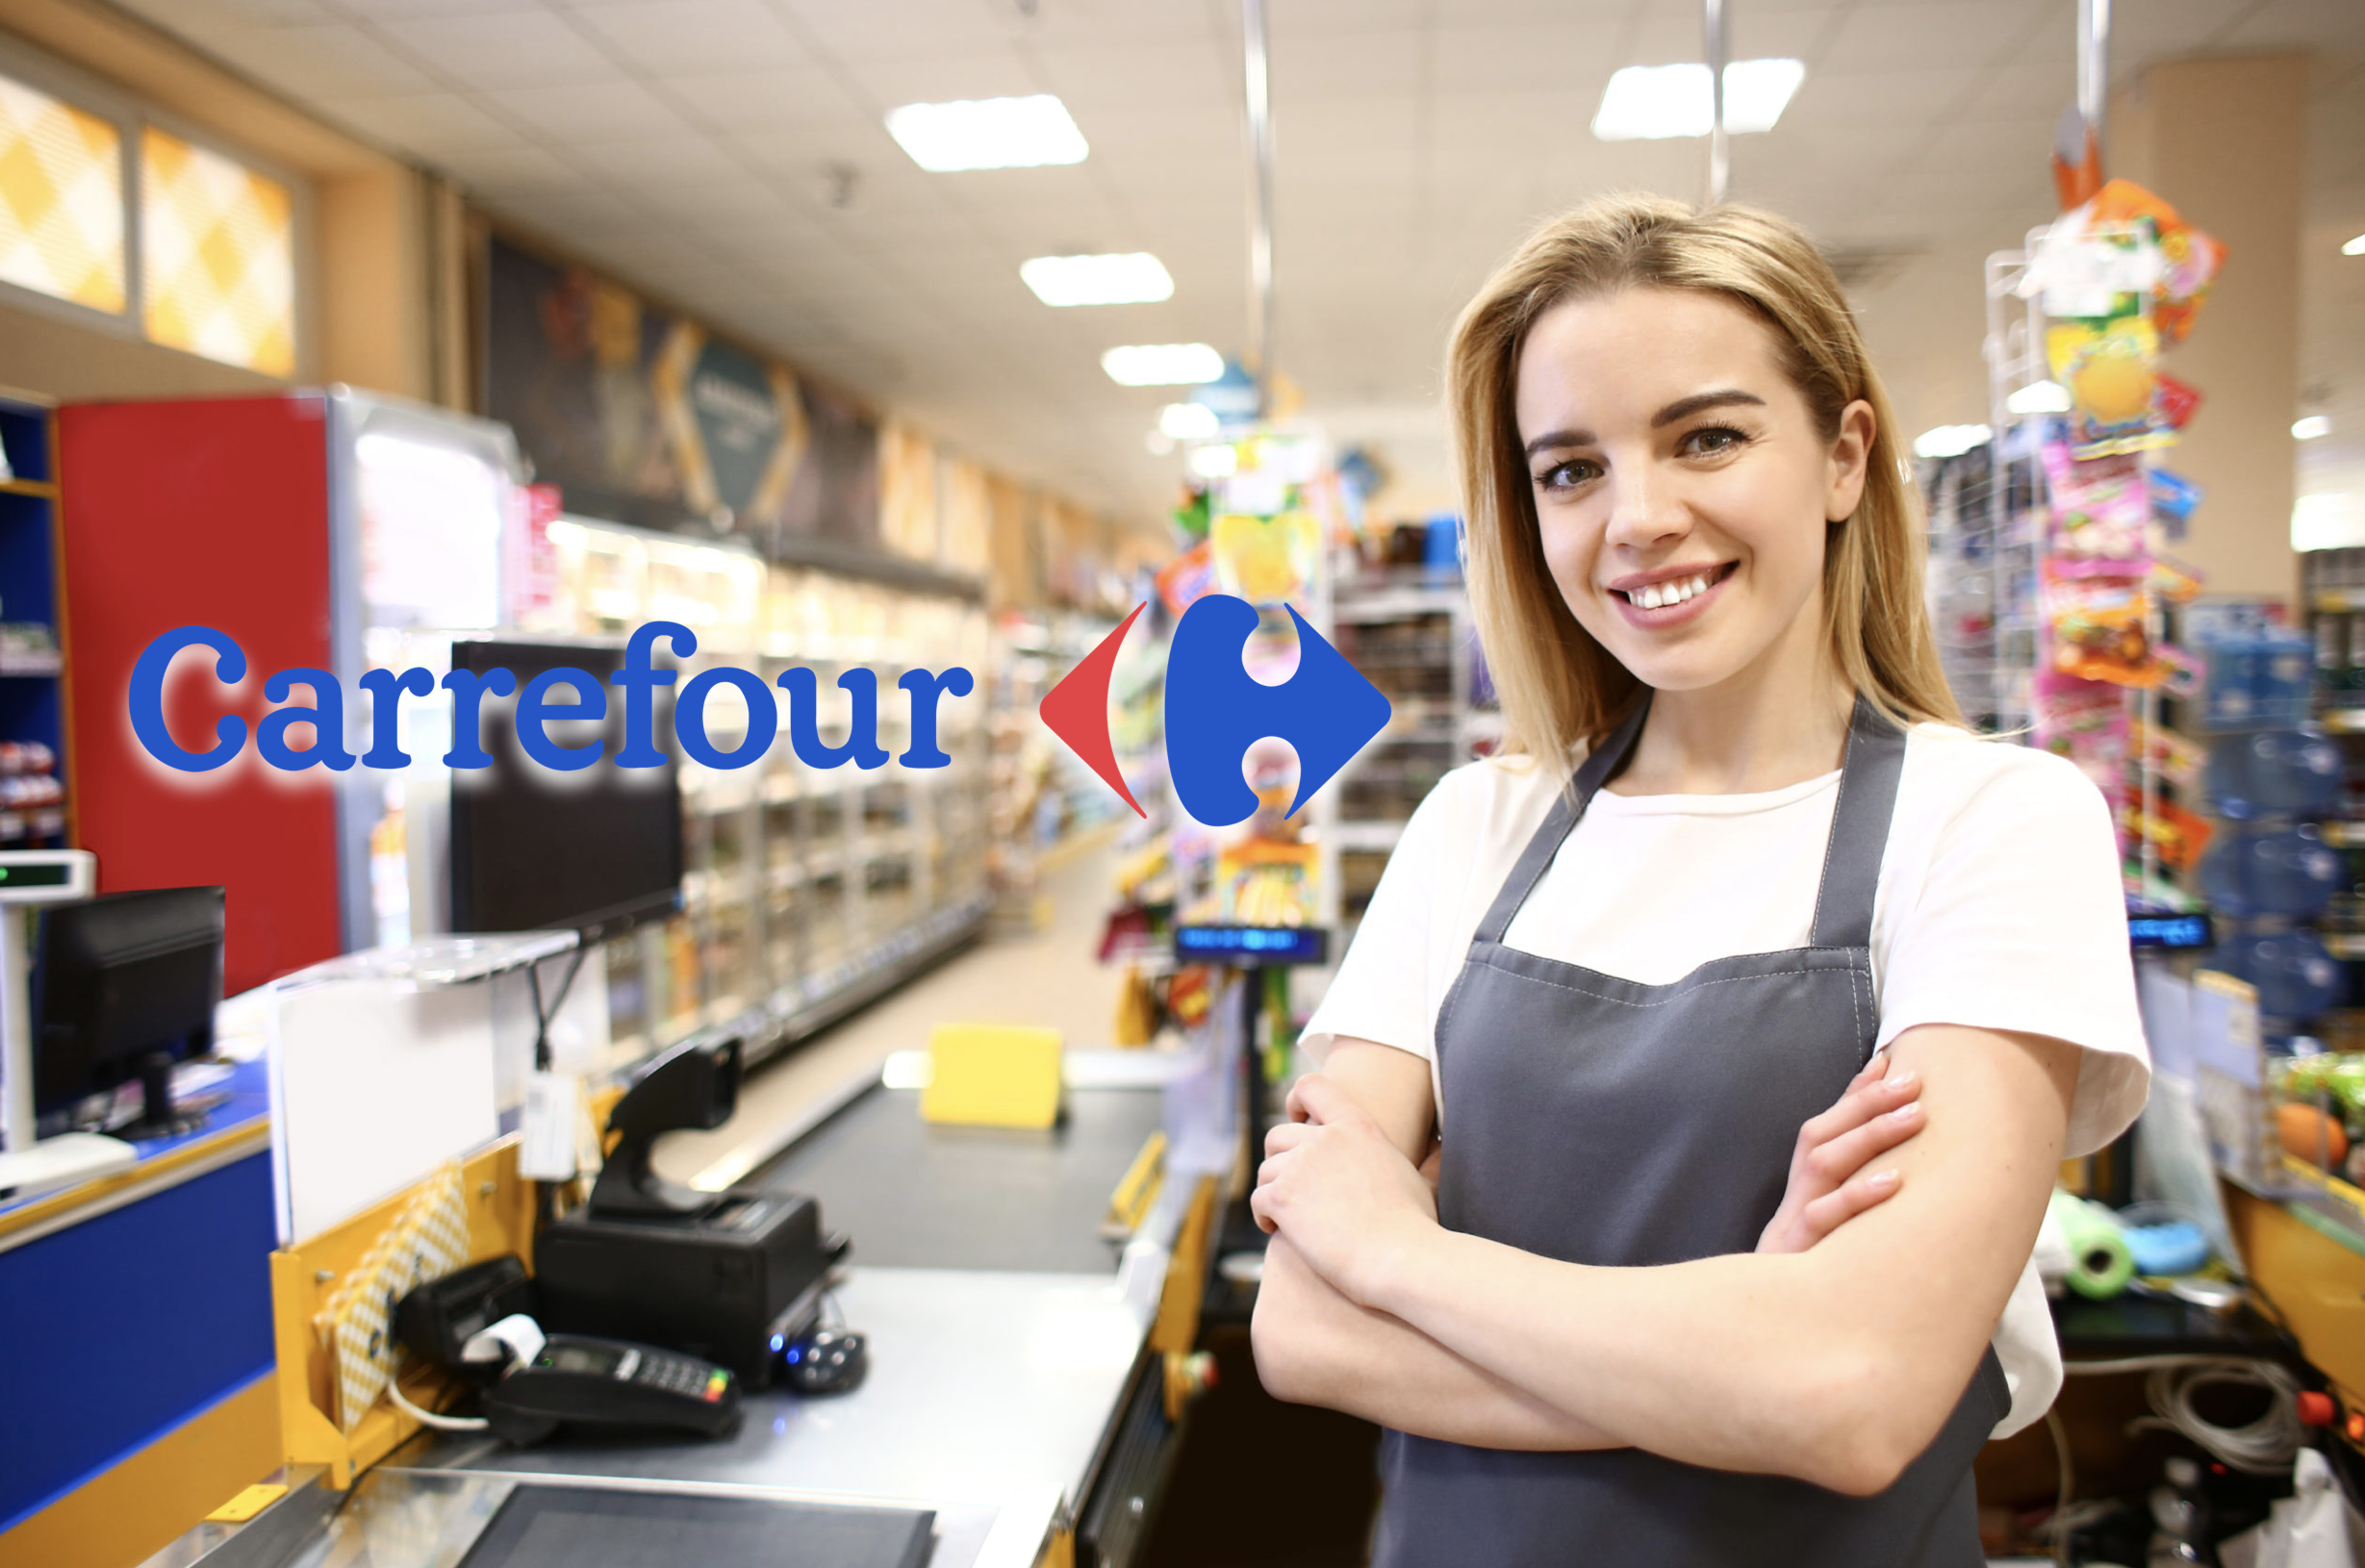 Envie o seu currículo para uma das vagas ofertadas pelo Carrefour agora mesmo